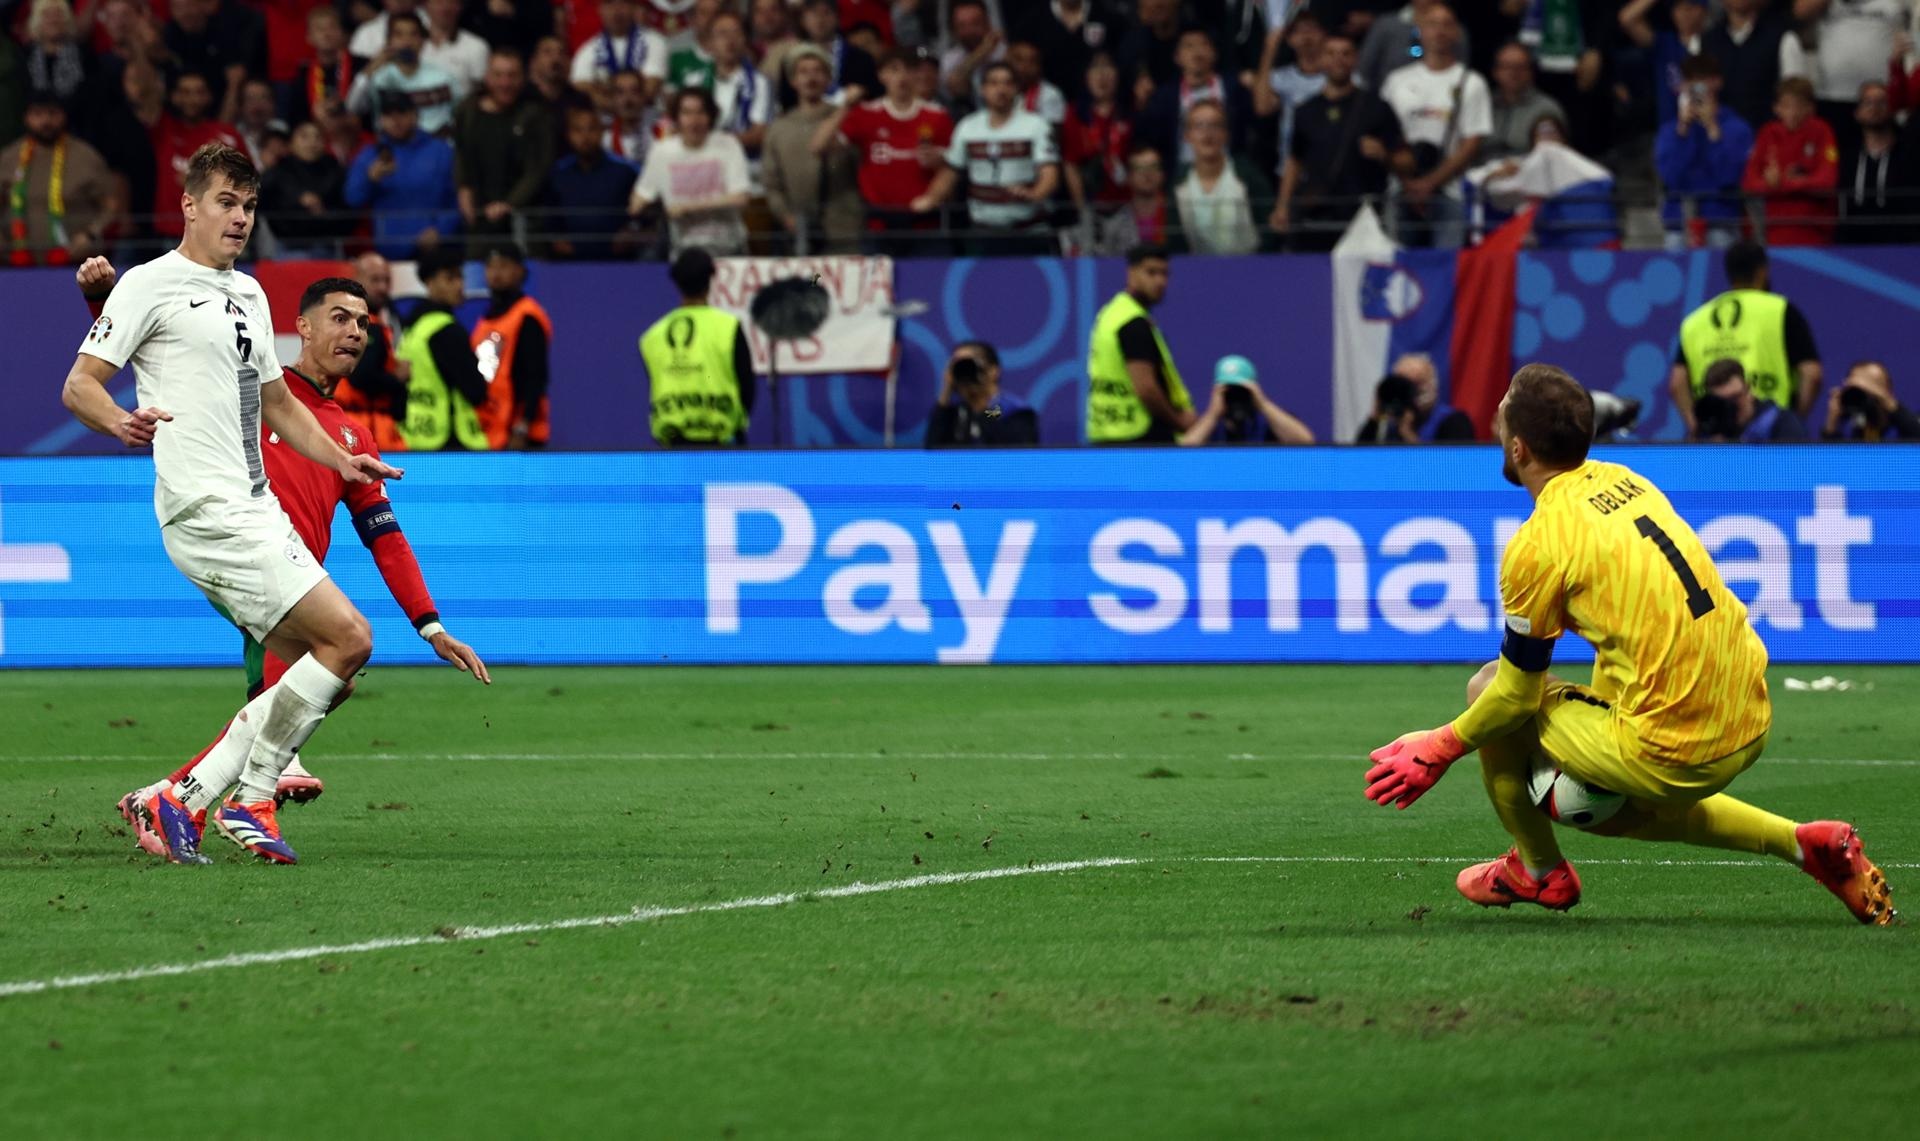 Il Portogallo ha raggiunto i quarti di finale degli Europei. La squadra di Roberto Martinez ha steso la Slovenia dagli undici metri grazie a tre parate di Diogo Costa, l'eroe della notte del Deutsche Bank Park.